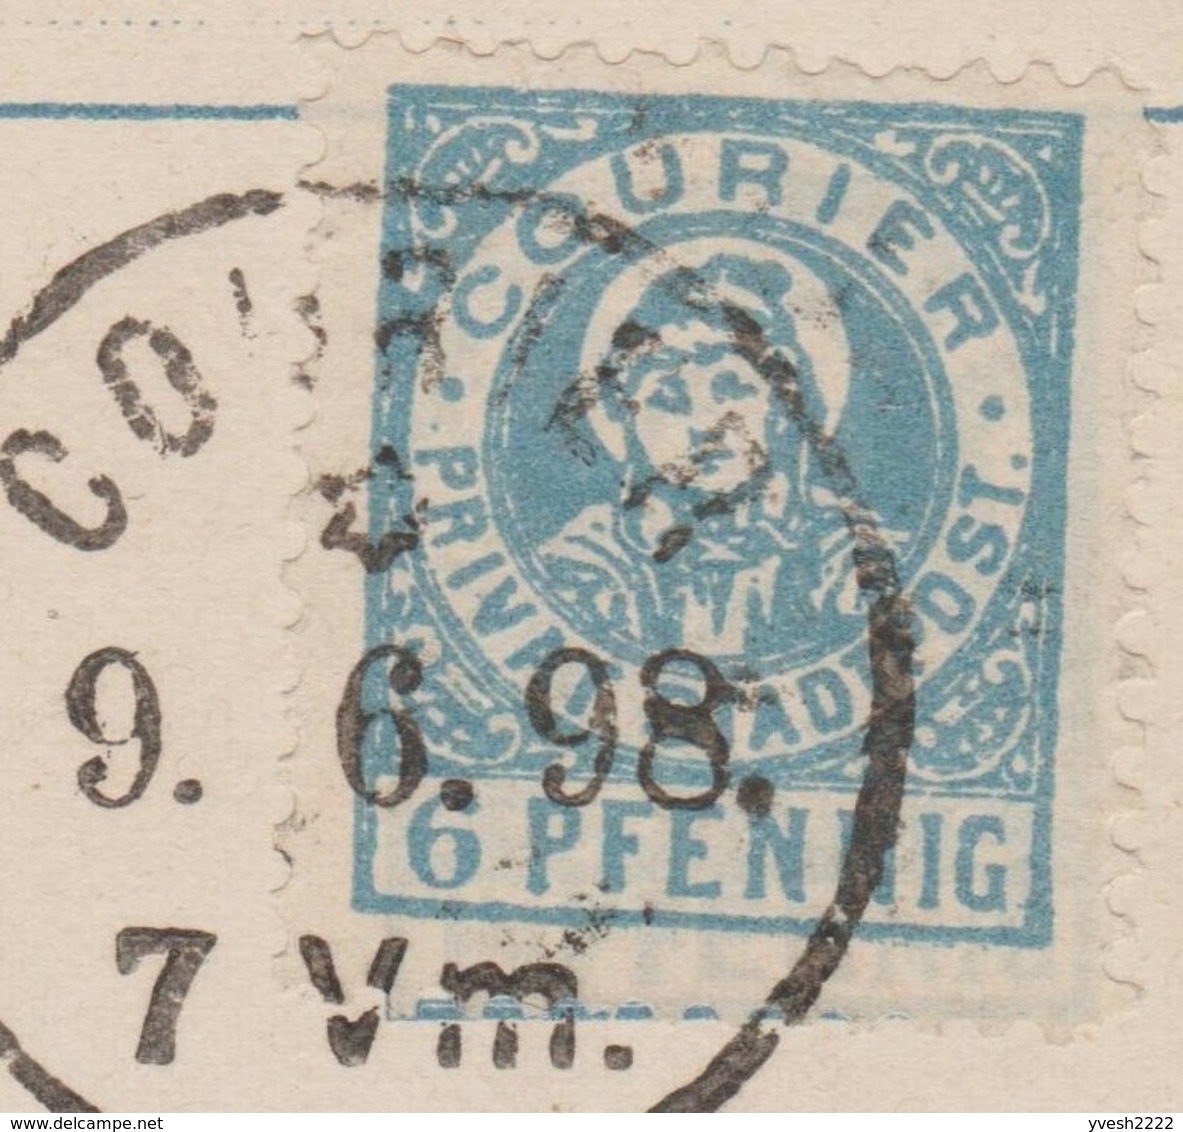 München 1898, Privatpost Courier Ganzsache. Deux Moines Remplissant Des Bouteilles De Vin Fût Péché Gourmandise Grützner - Vins & Alcools